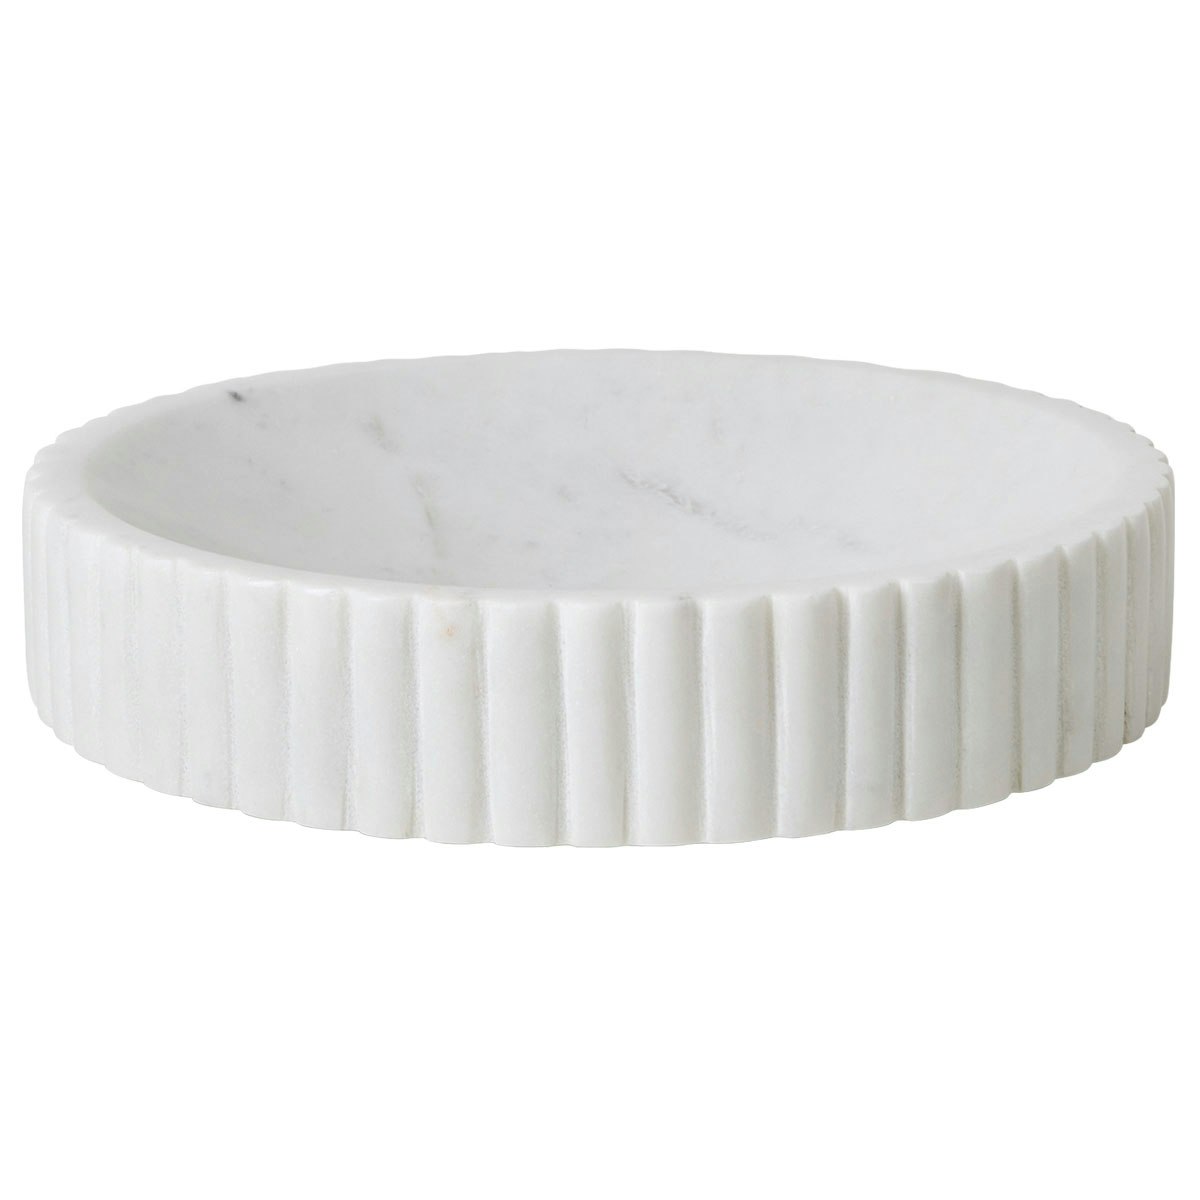 Platon Bowl White, 18 cm